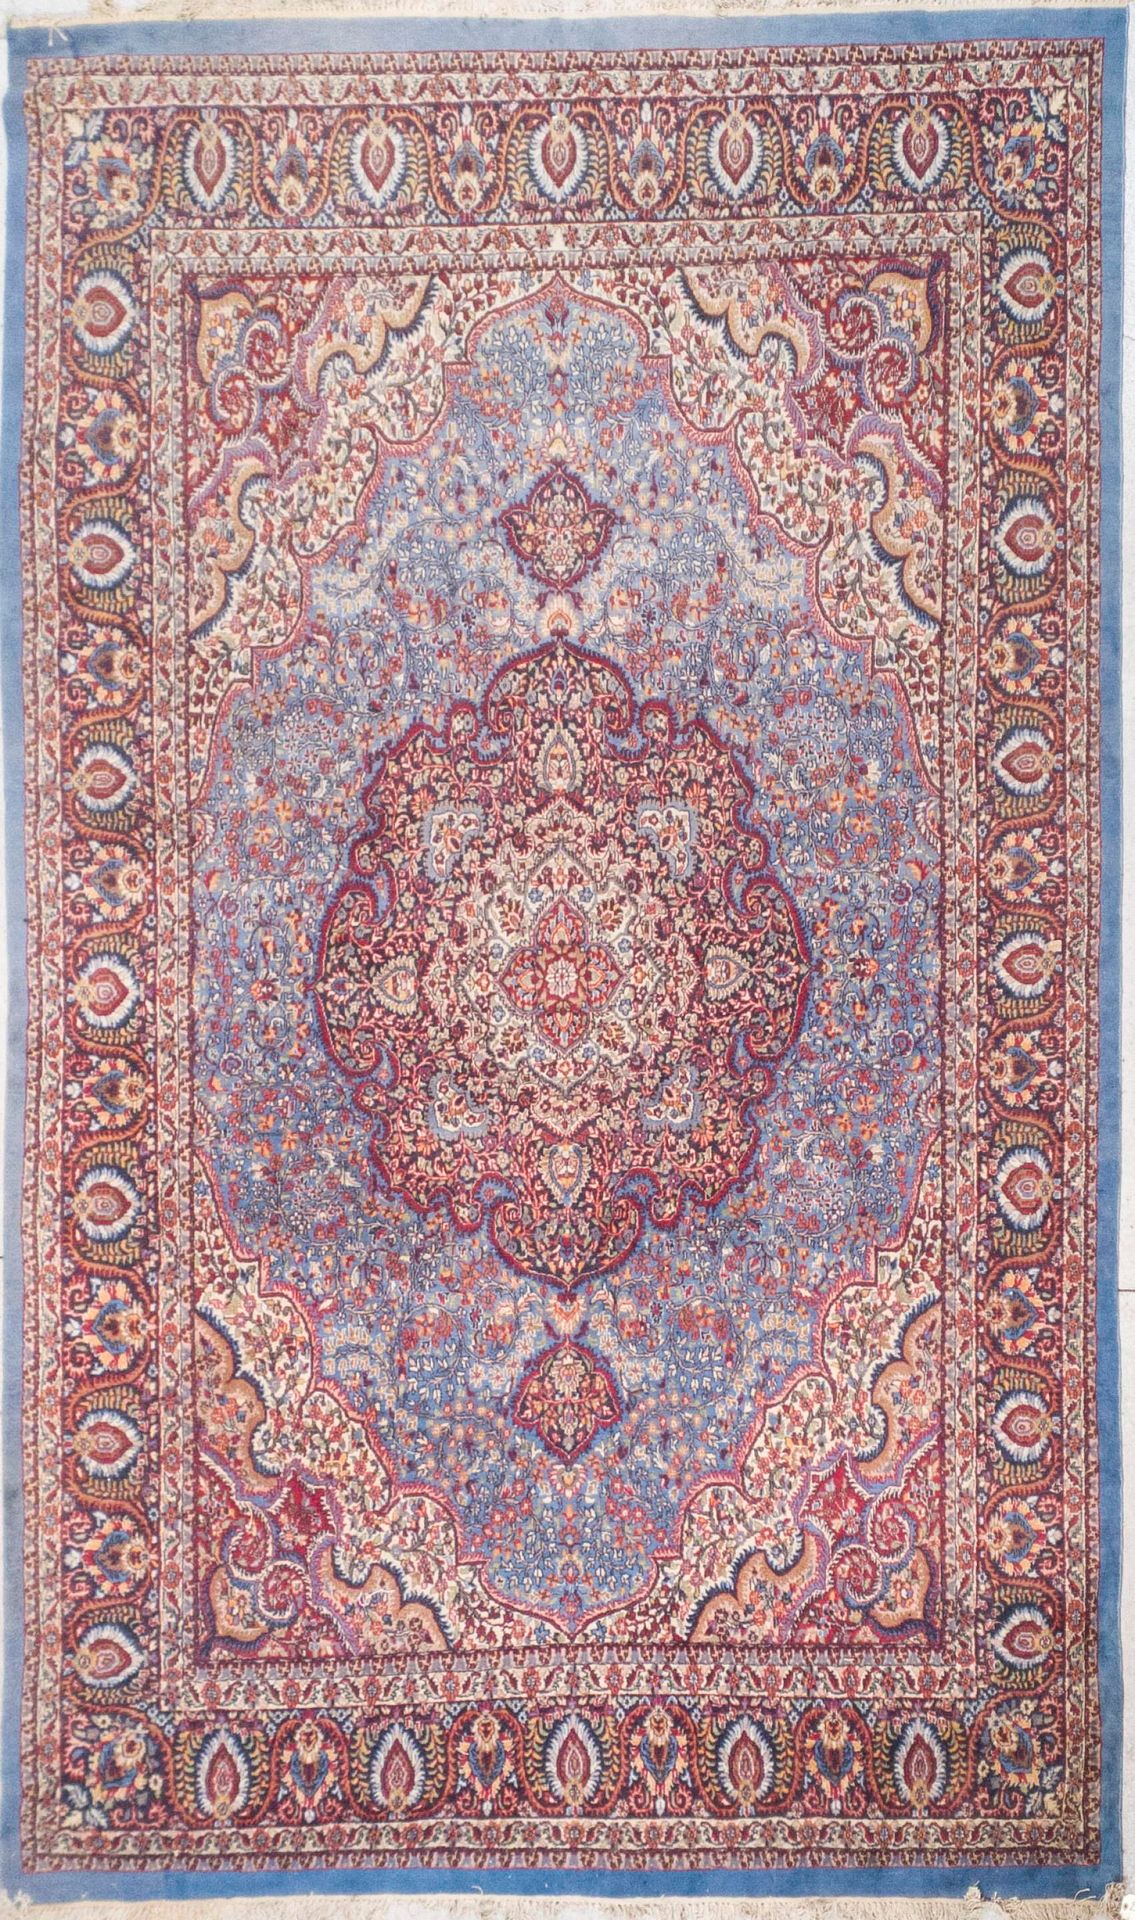 Null 阿格拉 - 印度

大型羊毛地毯，在午夜的蓝色背景上有中央奖章，上面有棕榈花和风格化的树叶。米色背景的边框。大边框上有棕榈花纹。

395 x 276&hellip;